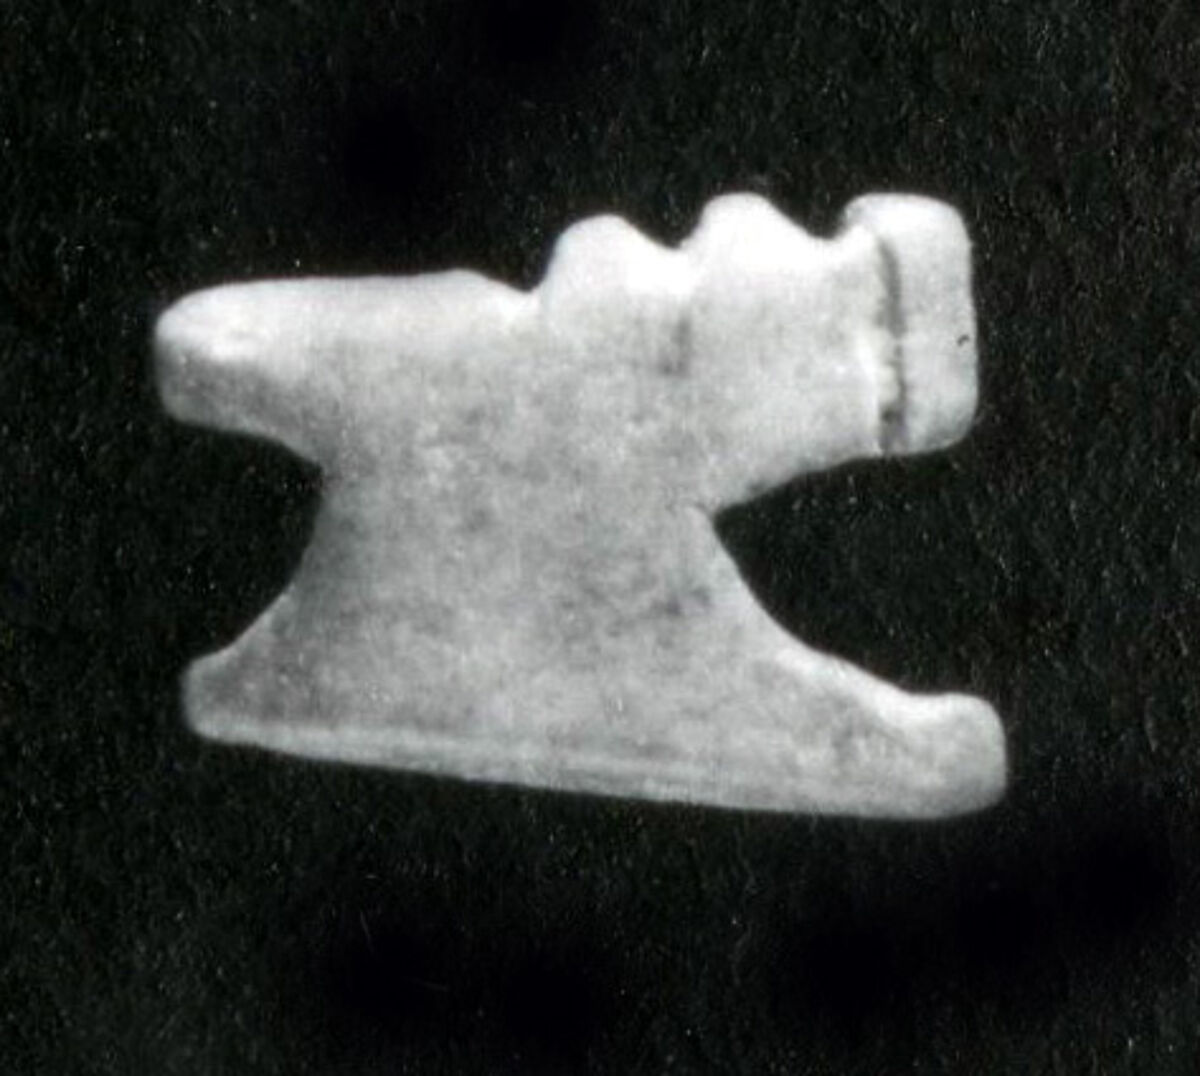 Lion amulet, Ivory 